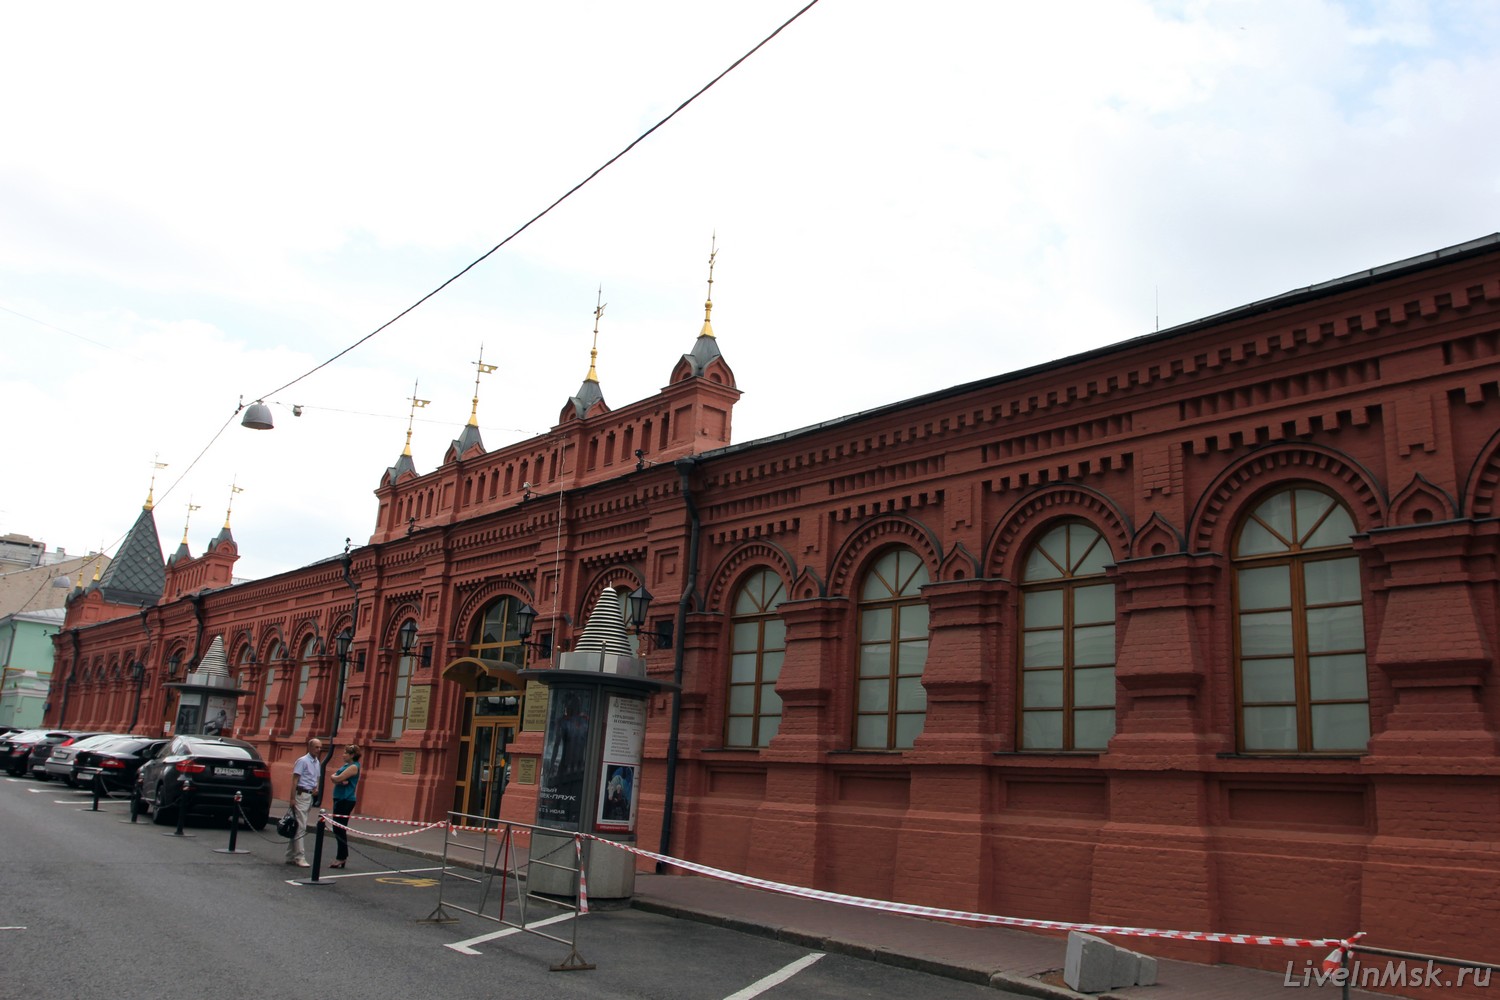 Электростанция в Георгиевском переулке, фото 2014 года